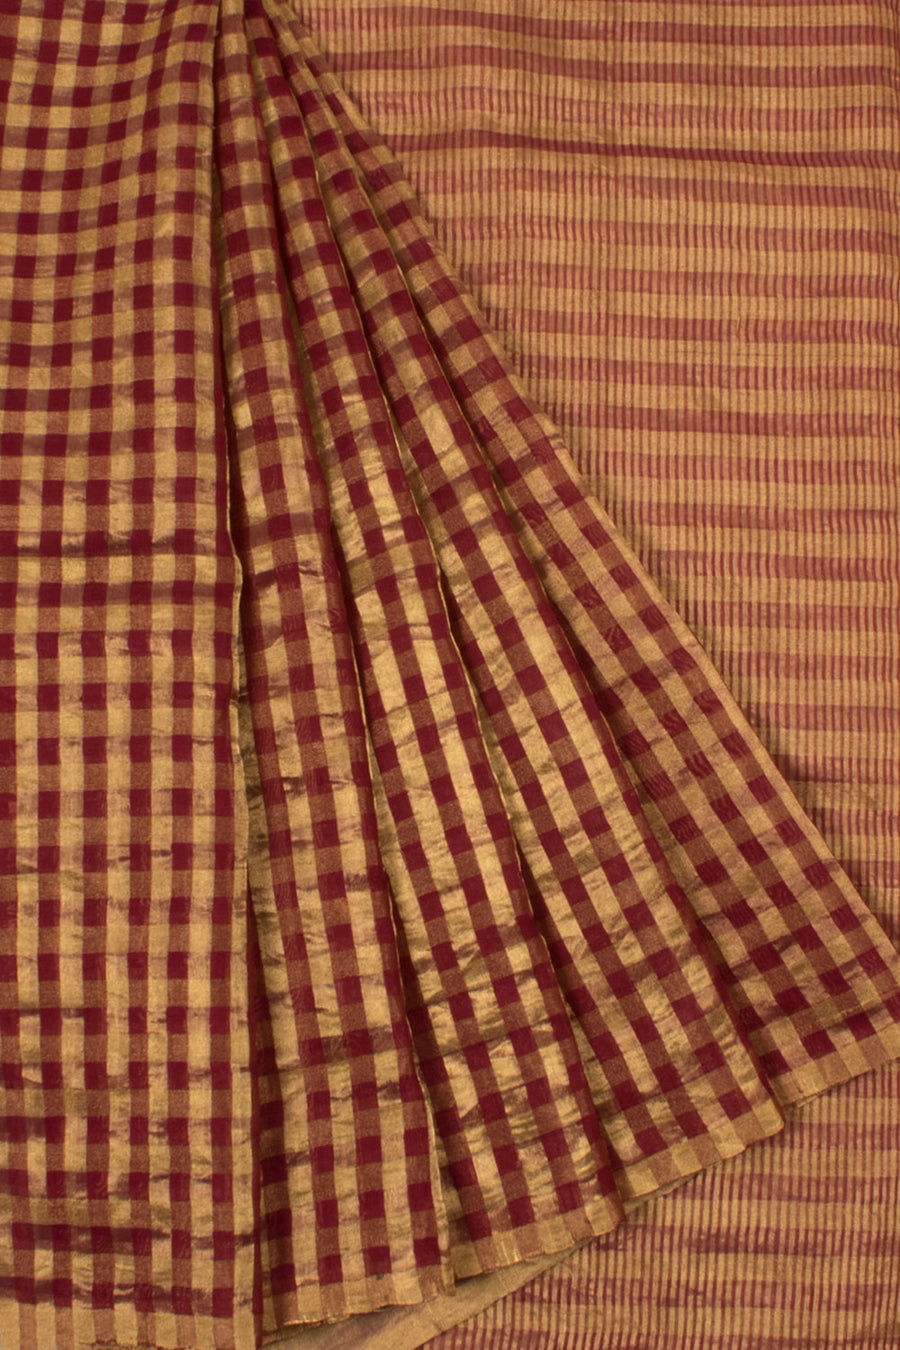 Handloom Chanderi Tissue Silk Saree with Checks Design